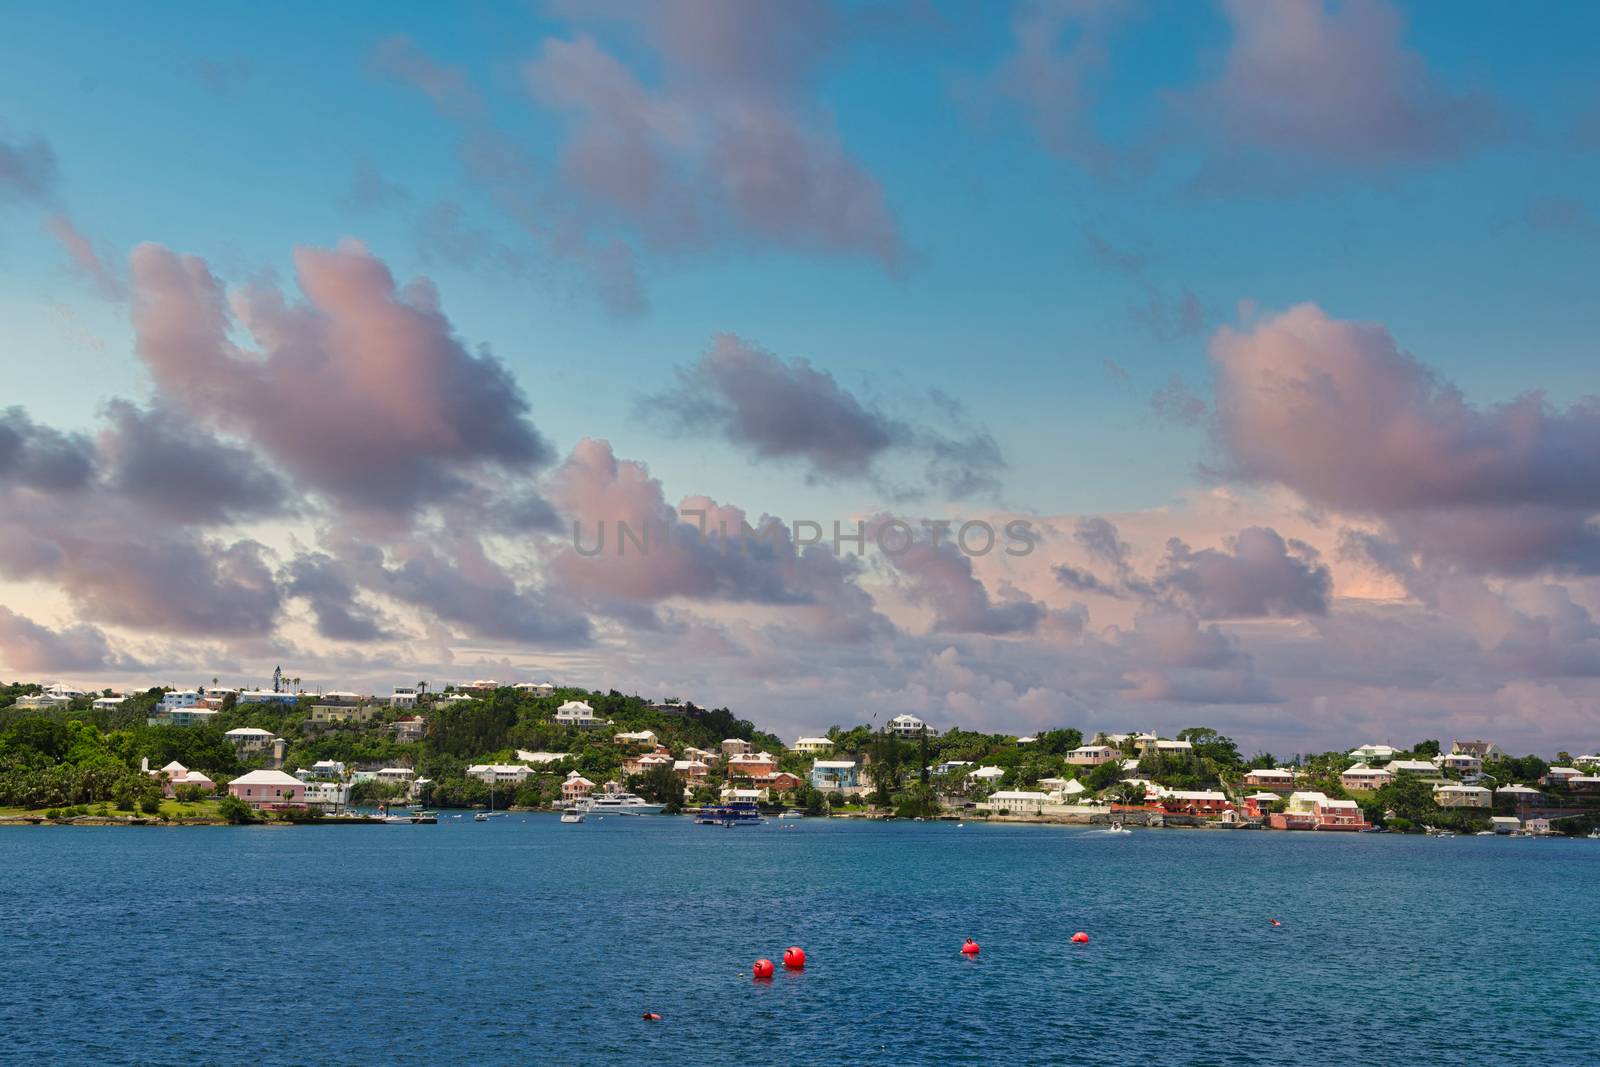 Bermuda Coastal Homes at Dusk by dbvirago